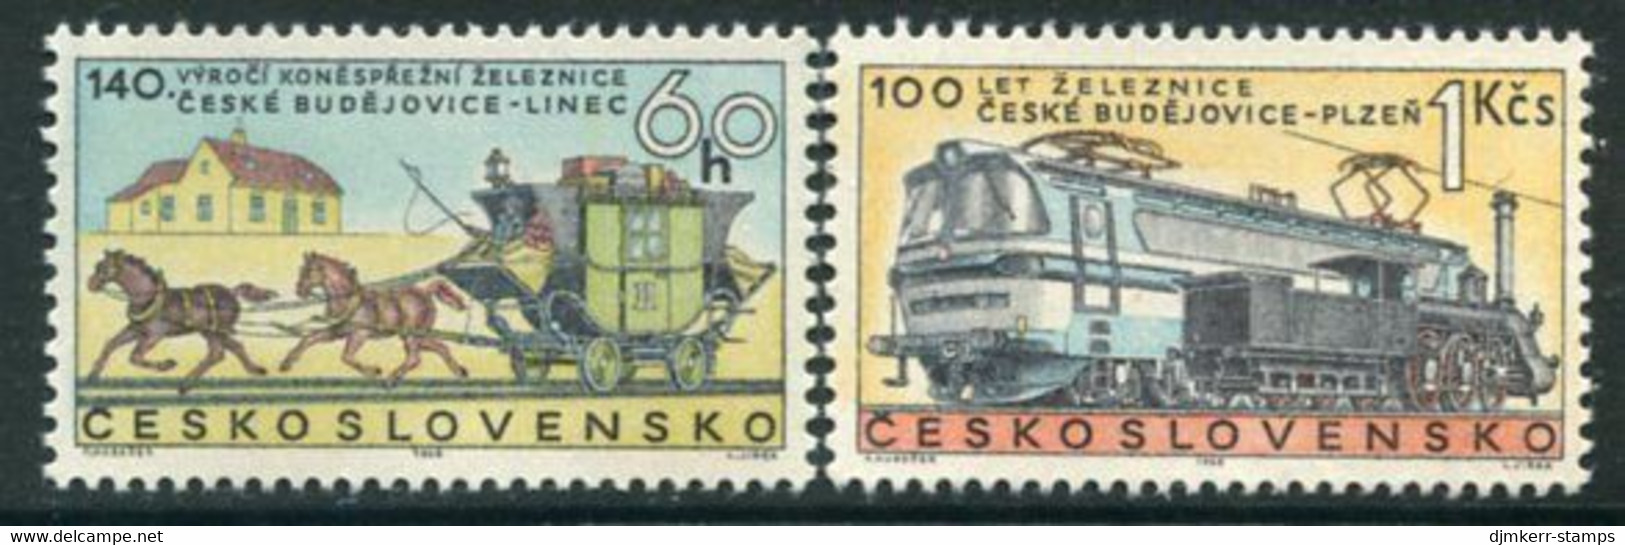 CZECHOSLOVAKIA 1968 Railway Anniversaries MNH / **   Michel 1806-07 - Ungebraucht